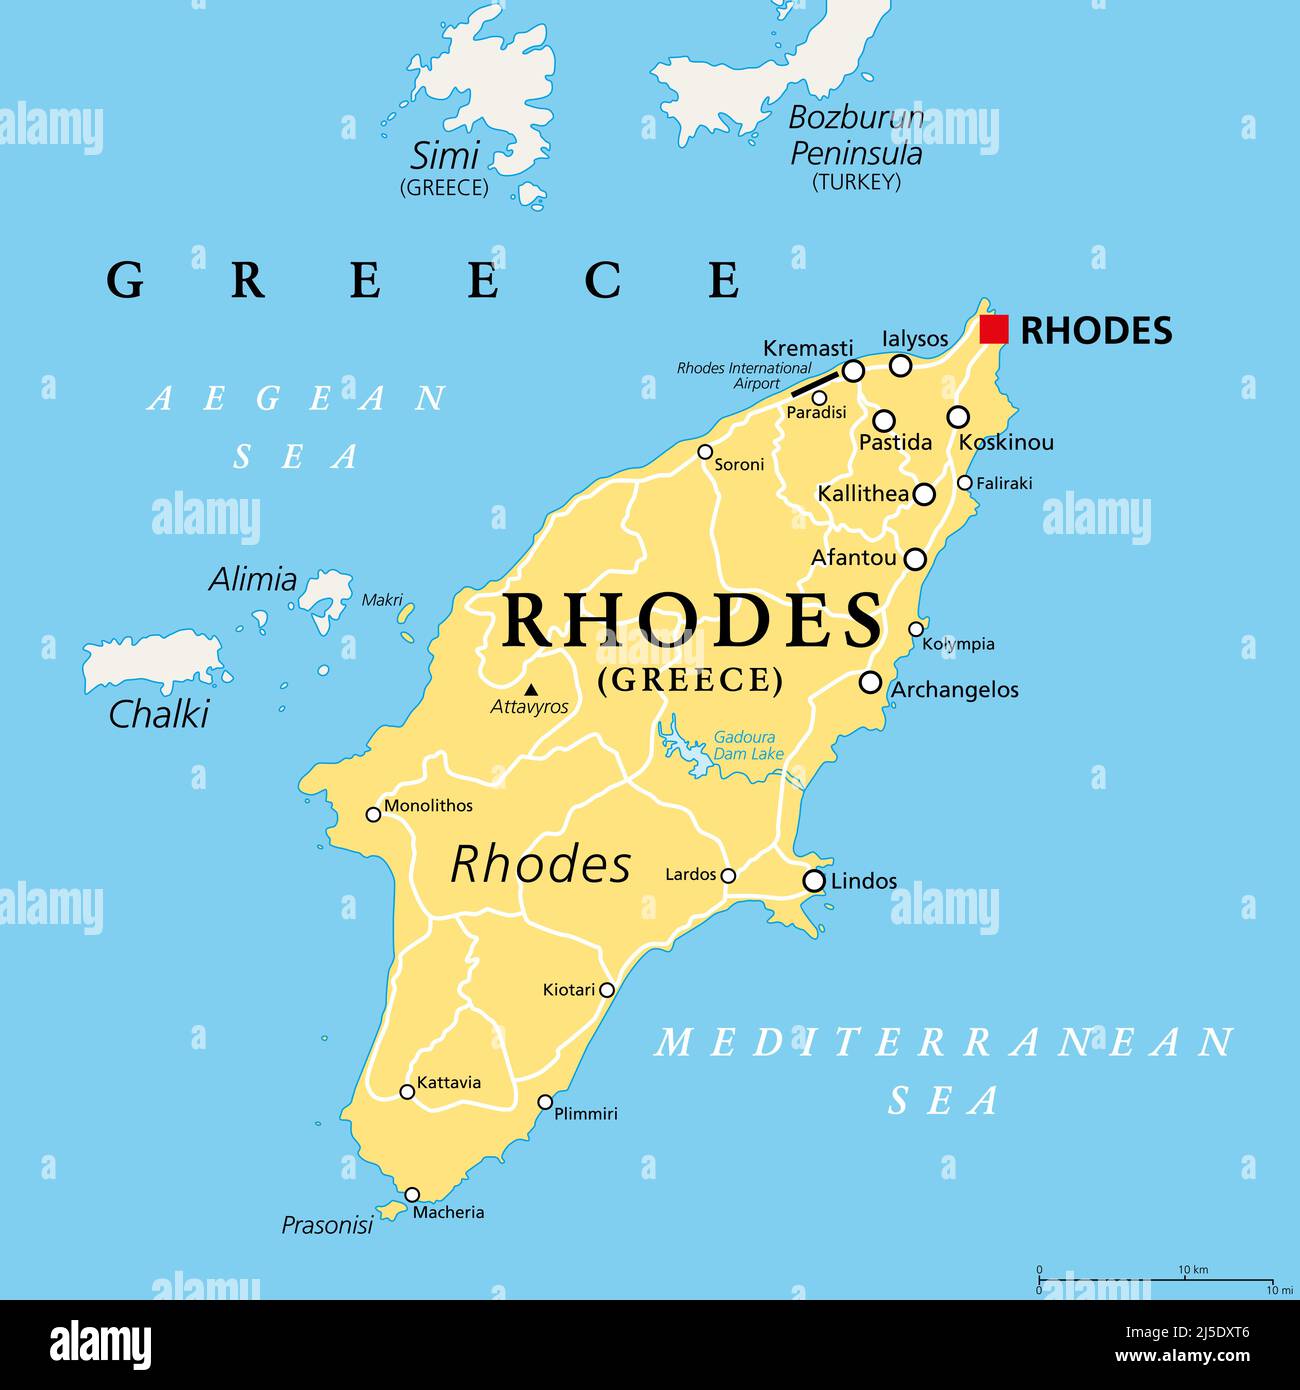 Rodi, isola greca, mappa politica. La più grande delle isole Dodecanesi della Grecia, nel Mar Mediterraneo, con diversi soprannomi, come l'Isola del Sole. Foto Stock